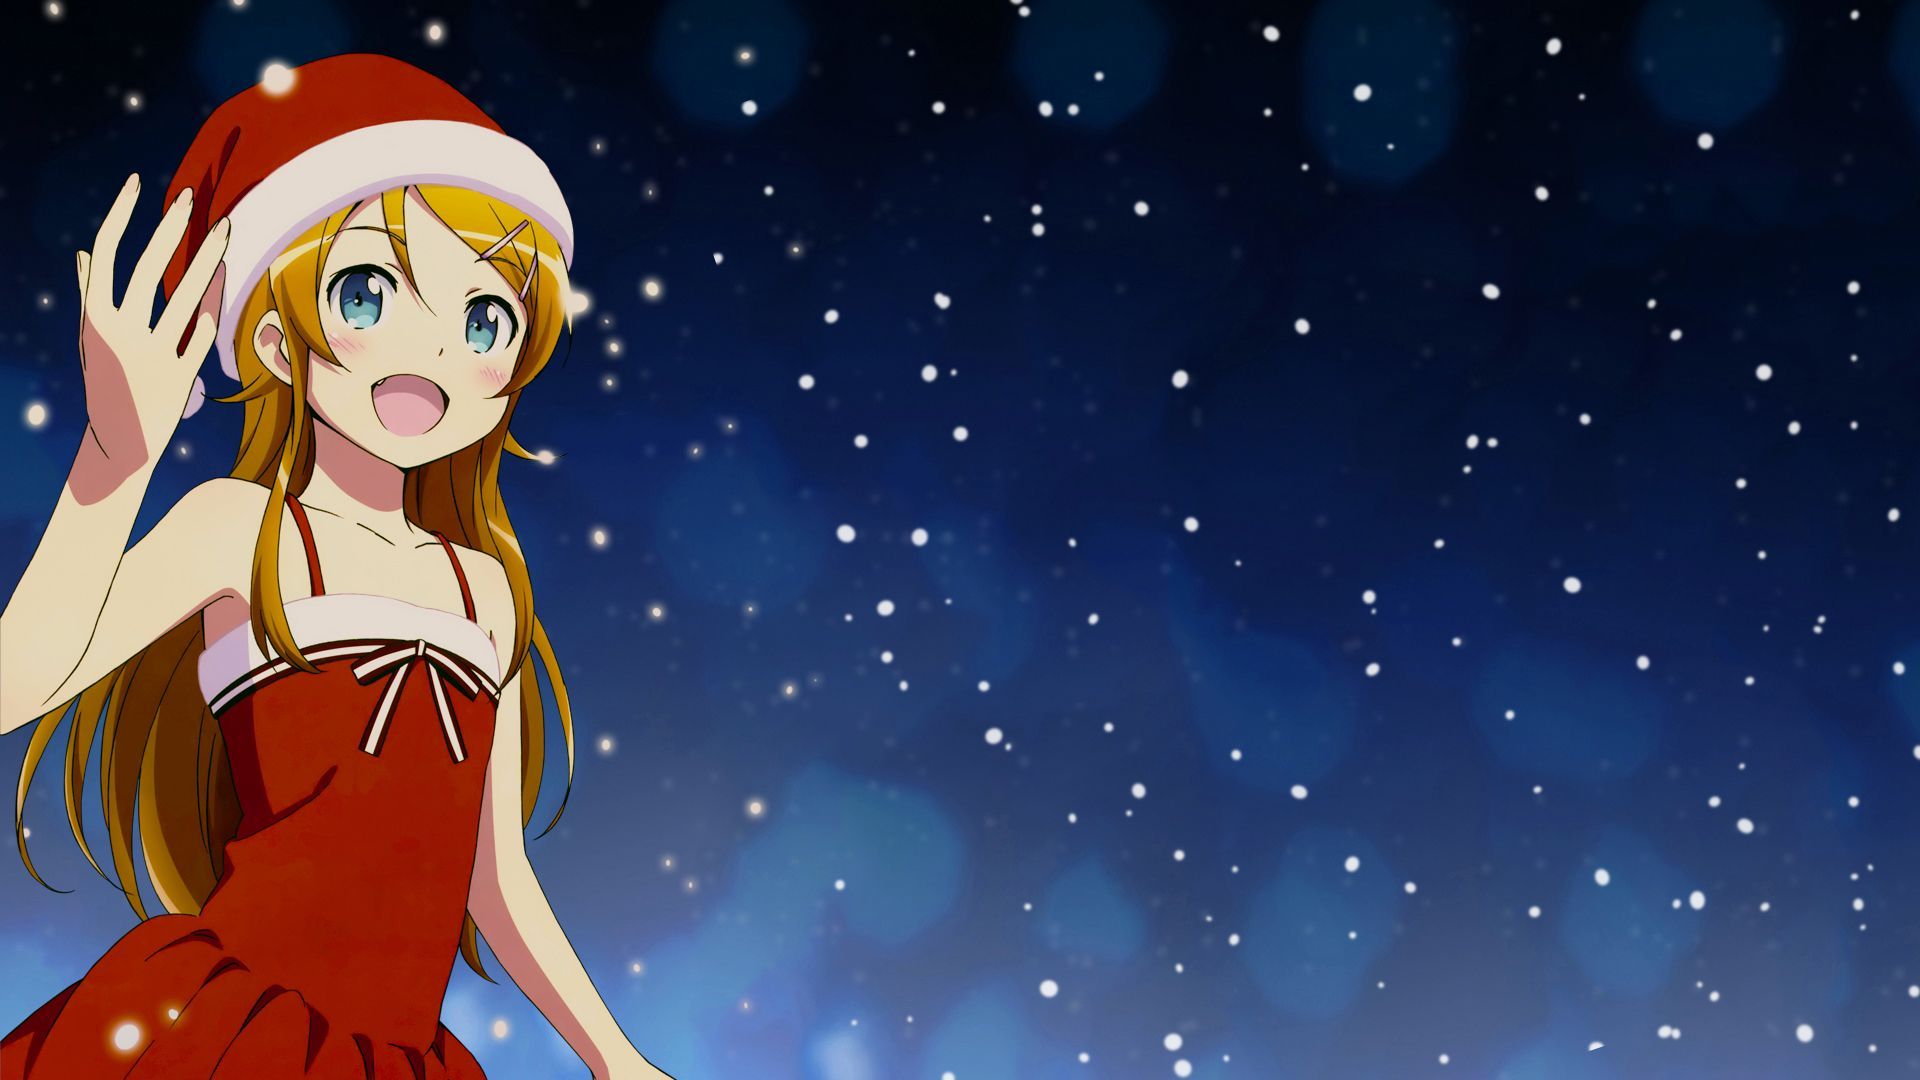 Anime Christmas wallpaper. Anime christmas, Christmas wallpaper hd, Anime